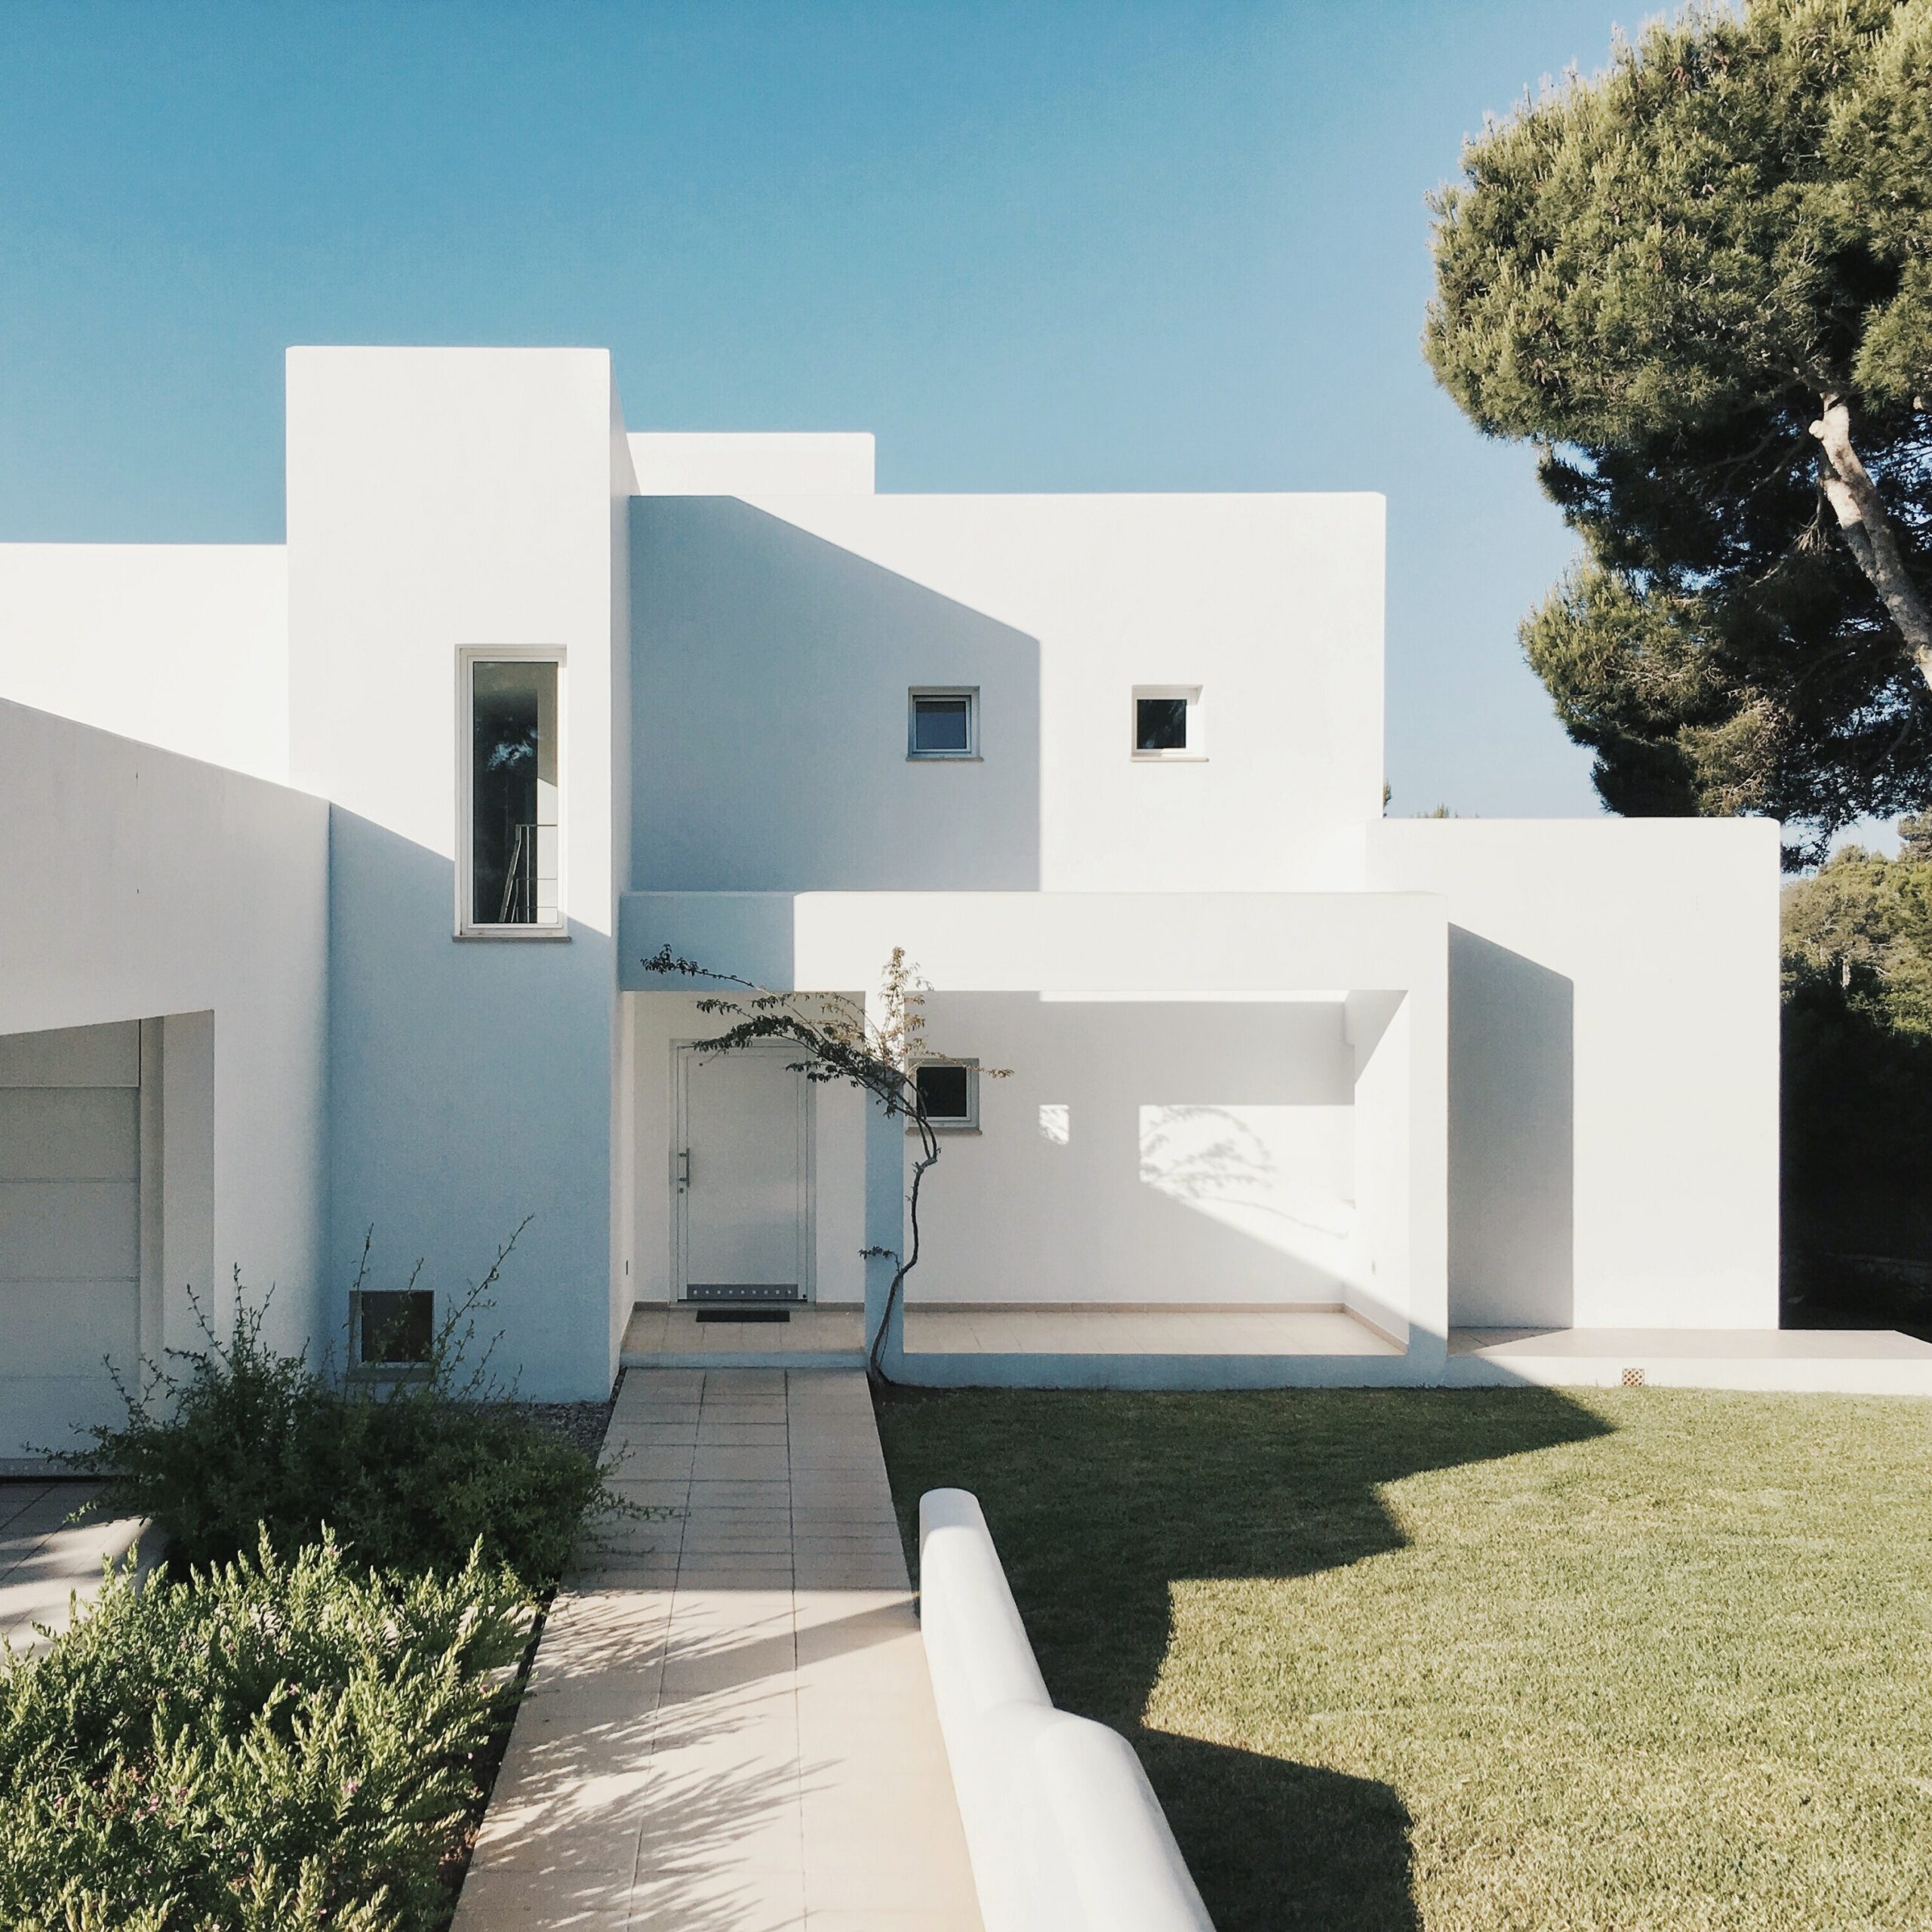 白色使建築更具簡約大氣的特點，彰顯出客戶對於簡潔、清爽生活方式的追求